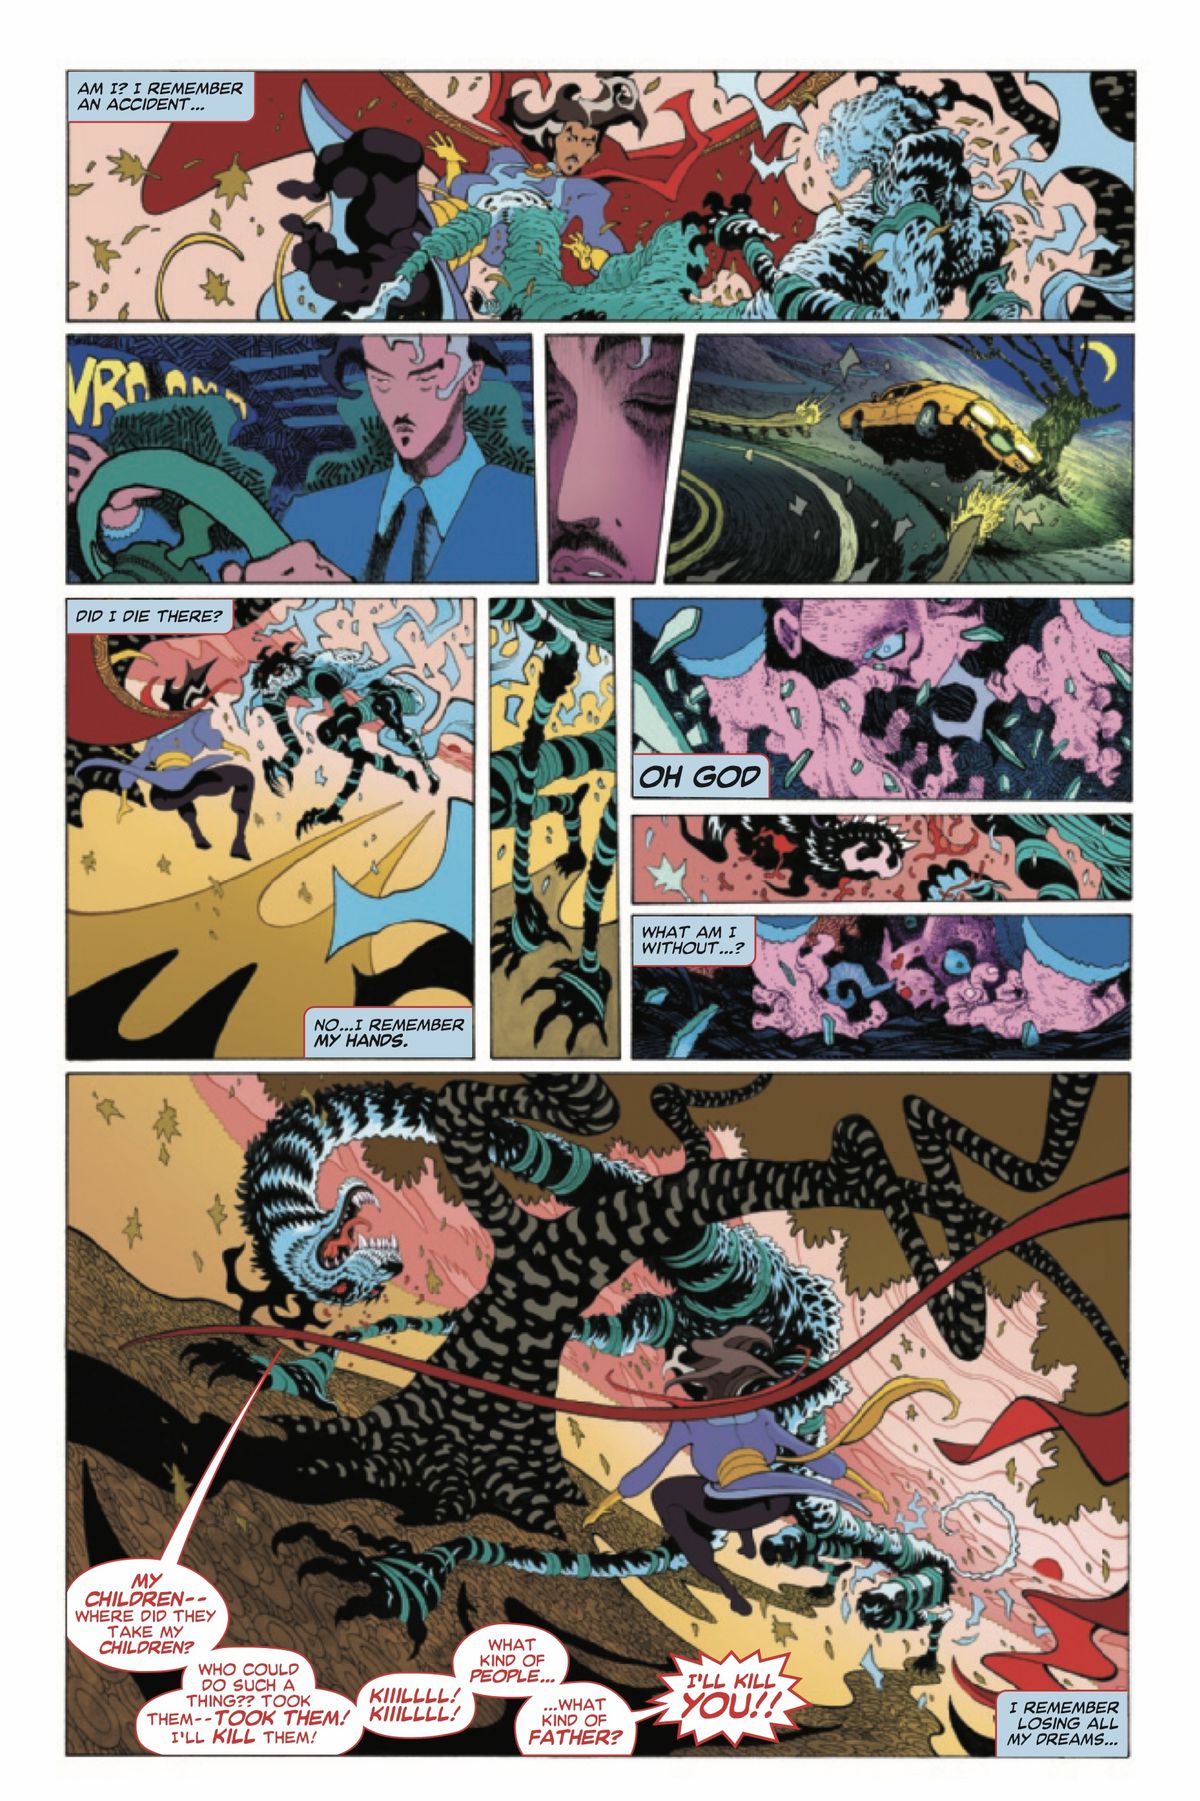 Una pagina di Doctor Strange # 1 (Marvel Comics, 2022) in cui scene oniriche della storia delle origini di Doctor Strange sono intervallate da una scena nel presente in cui Doctor Strange combatte una tigre fantasma.